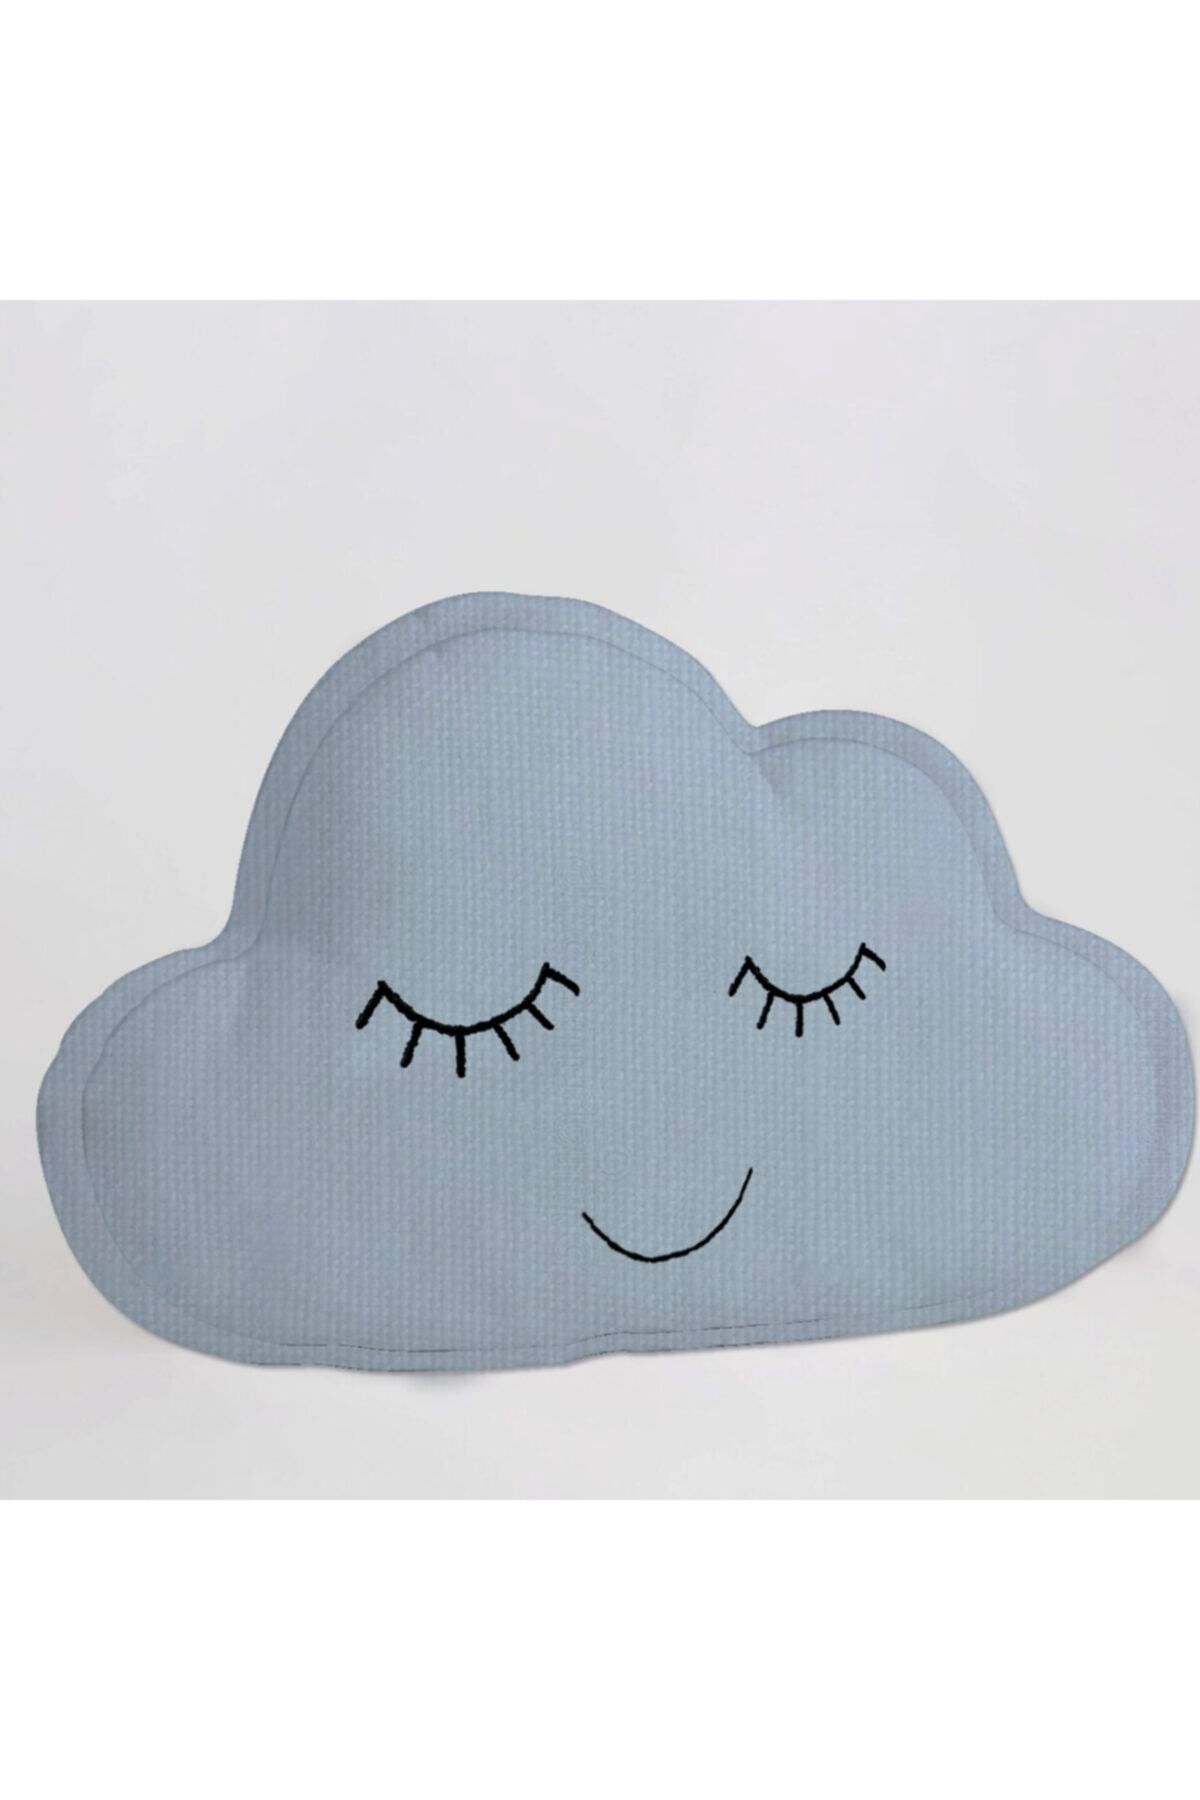 Miomundo Bebek & Çocuk Odası Bulut Dekoratif Yastık Uyku Arkadaşı Açık Mavi